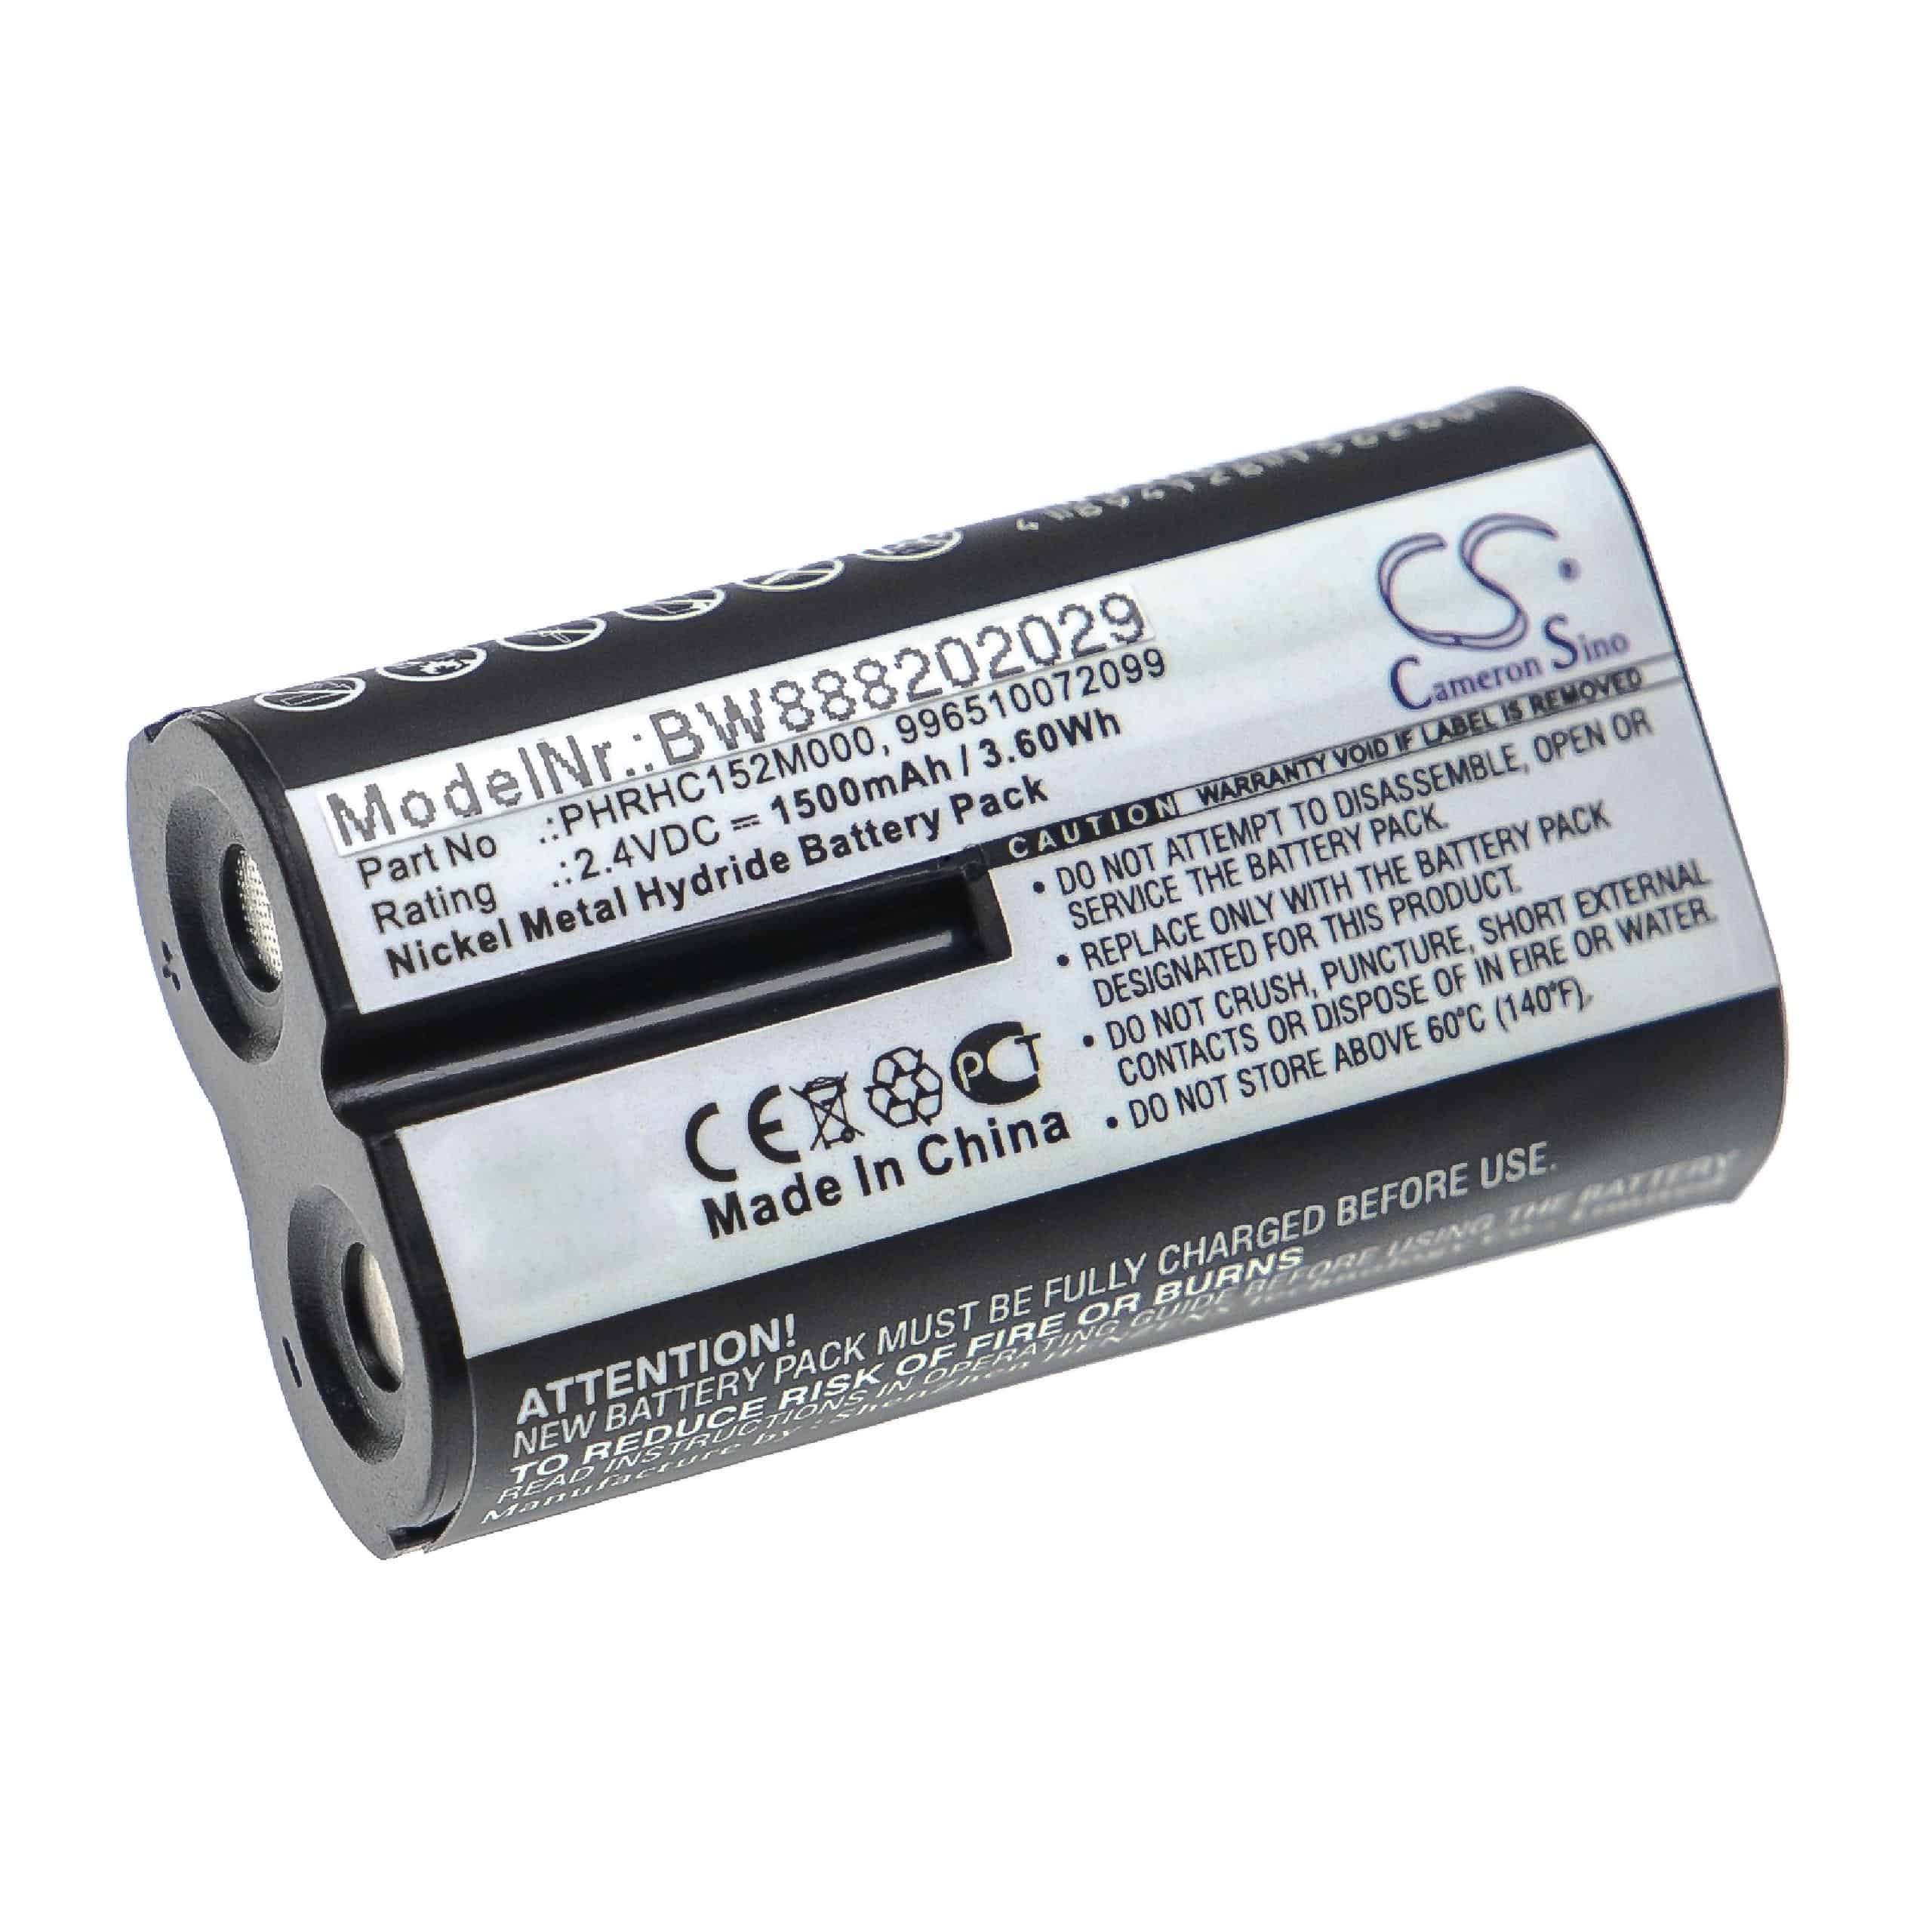 Batterie remplace Philips PHRHC152M000, 996510072099 pour moniteur bébé - 1500mAh 2,4V NiMH